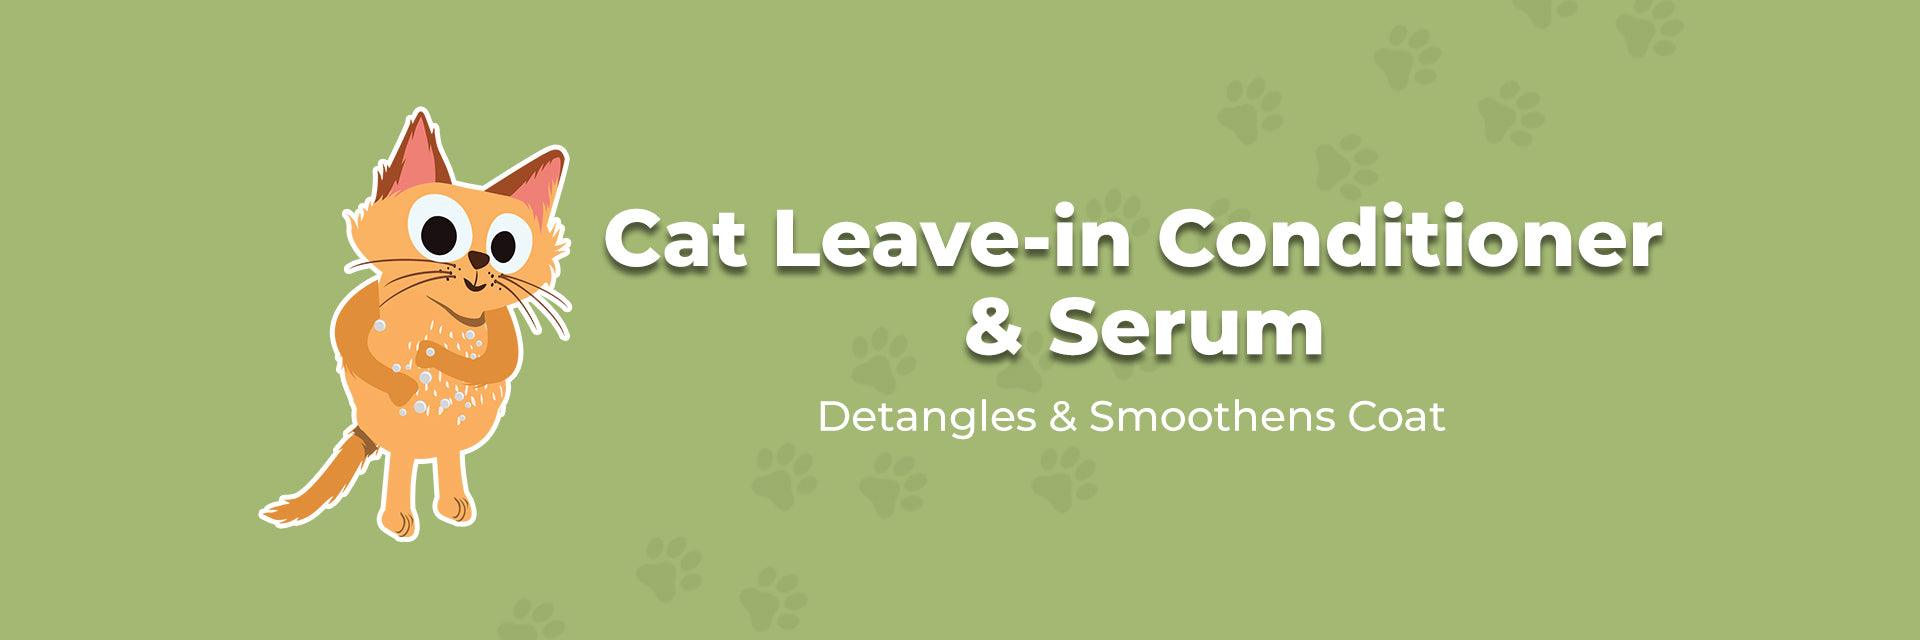 Cat Leave-in Conditioner & Serum